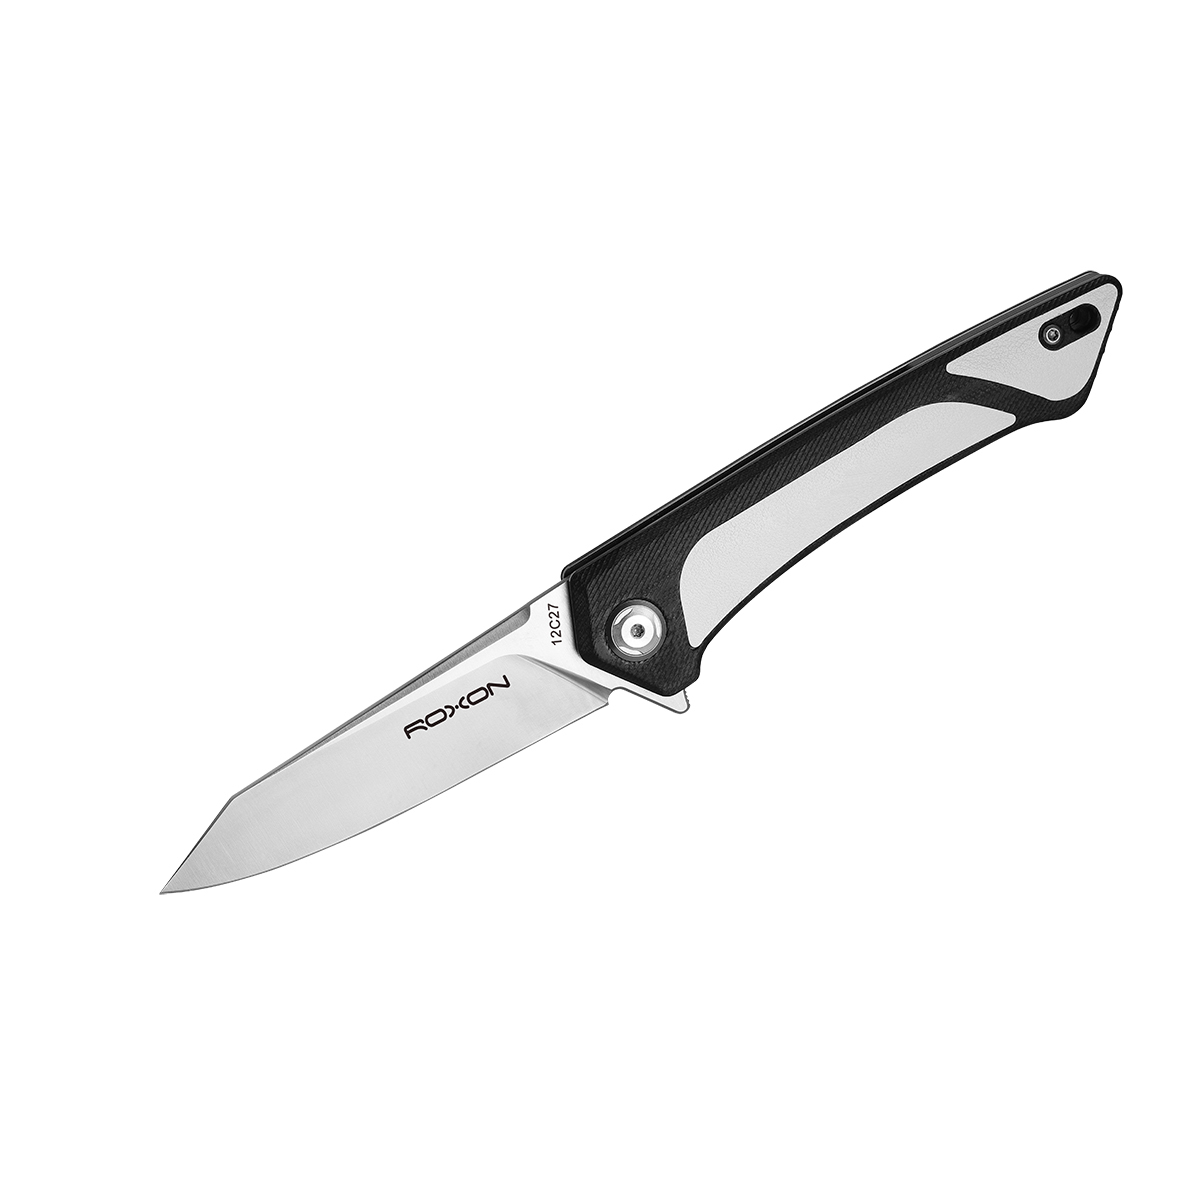 Складной нож Roxon K2, сталь sandvik 12C27, рукоять G10/кожа, белый